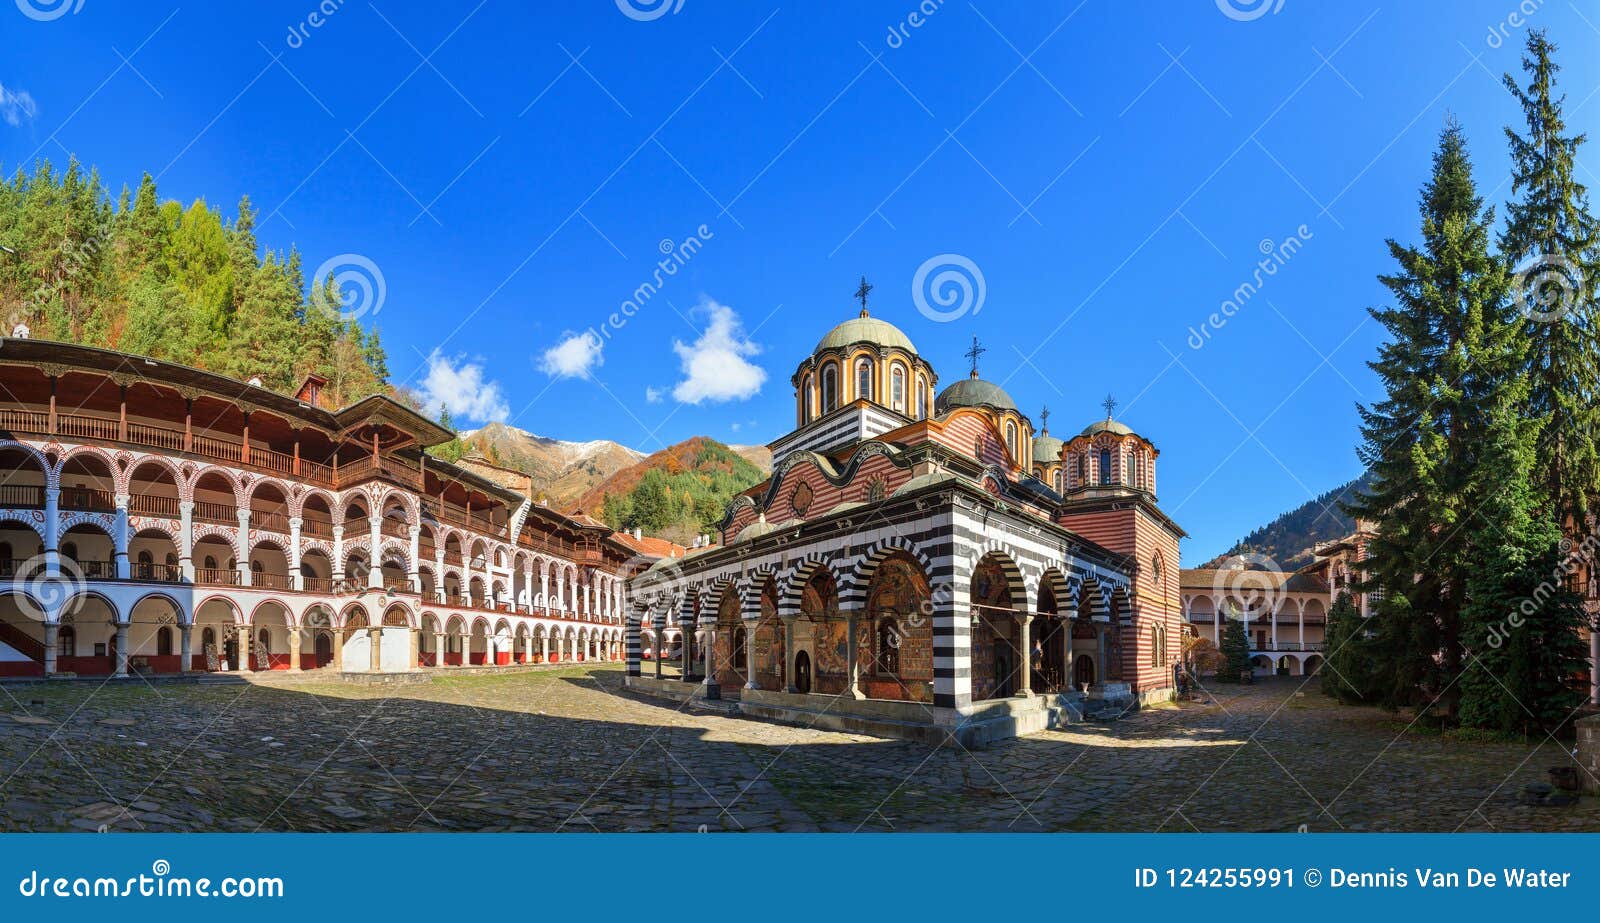 panorama rila monastery blue sky